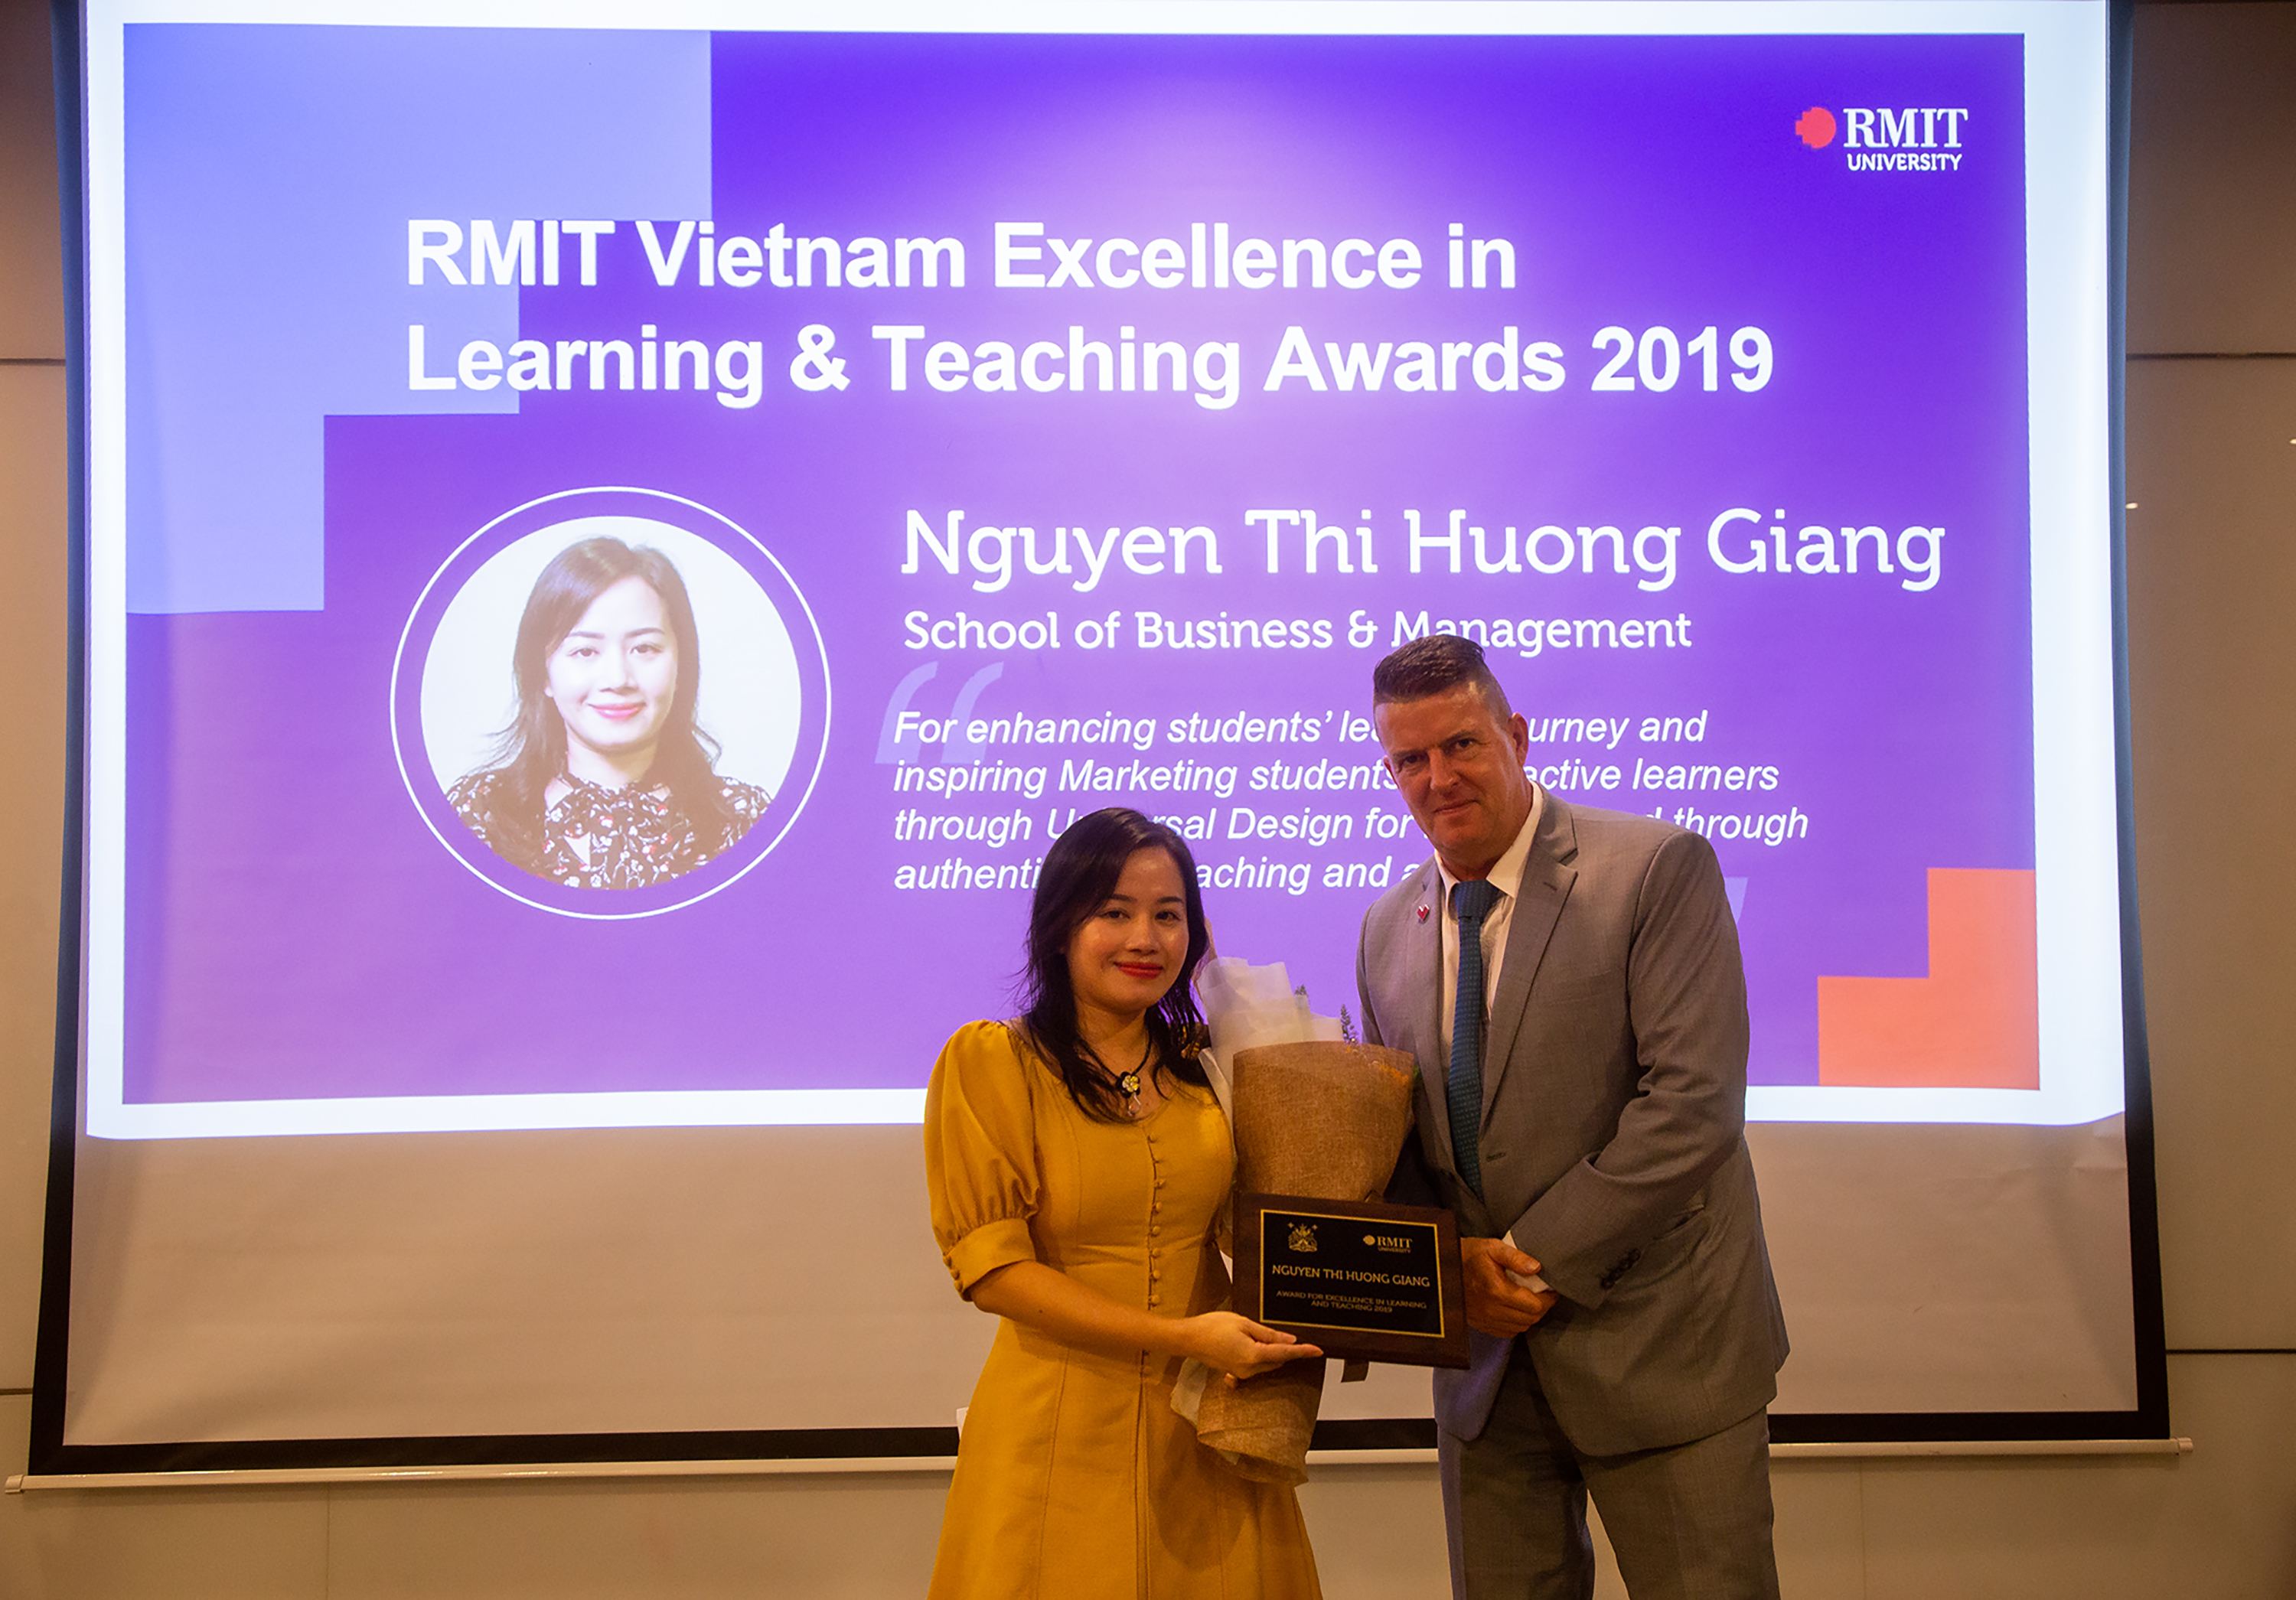 Cô Nguyễn Thị Hương Giang, giảng viên ngành Digital Marketing từ Khoa Kinh doanh và Quản trị, được trao giải Cống hiến hết mình cho việc học của sinh viên nhờ tác động mạnh mẽ lên trải nghiệm học của sinh viên theo học ngành cô. 